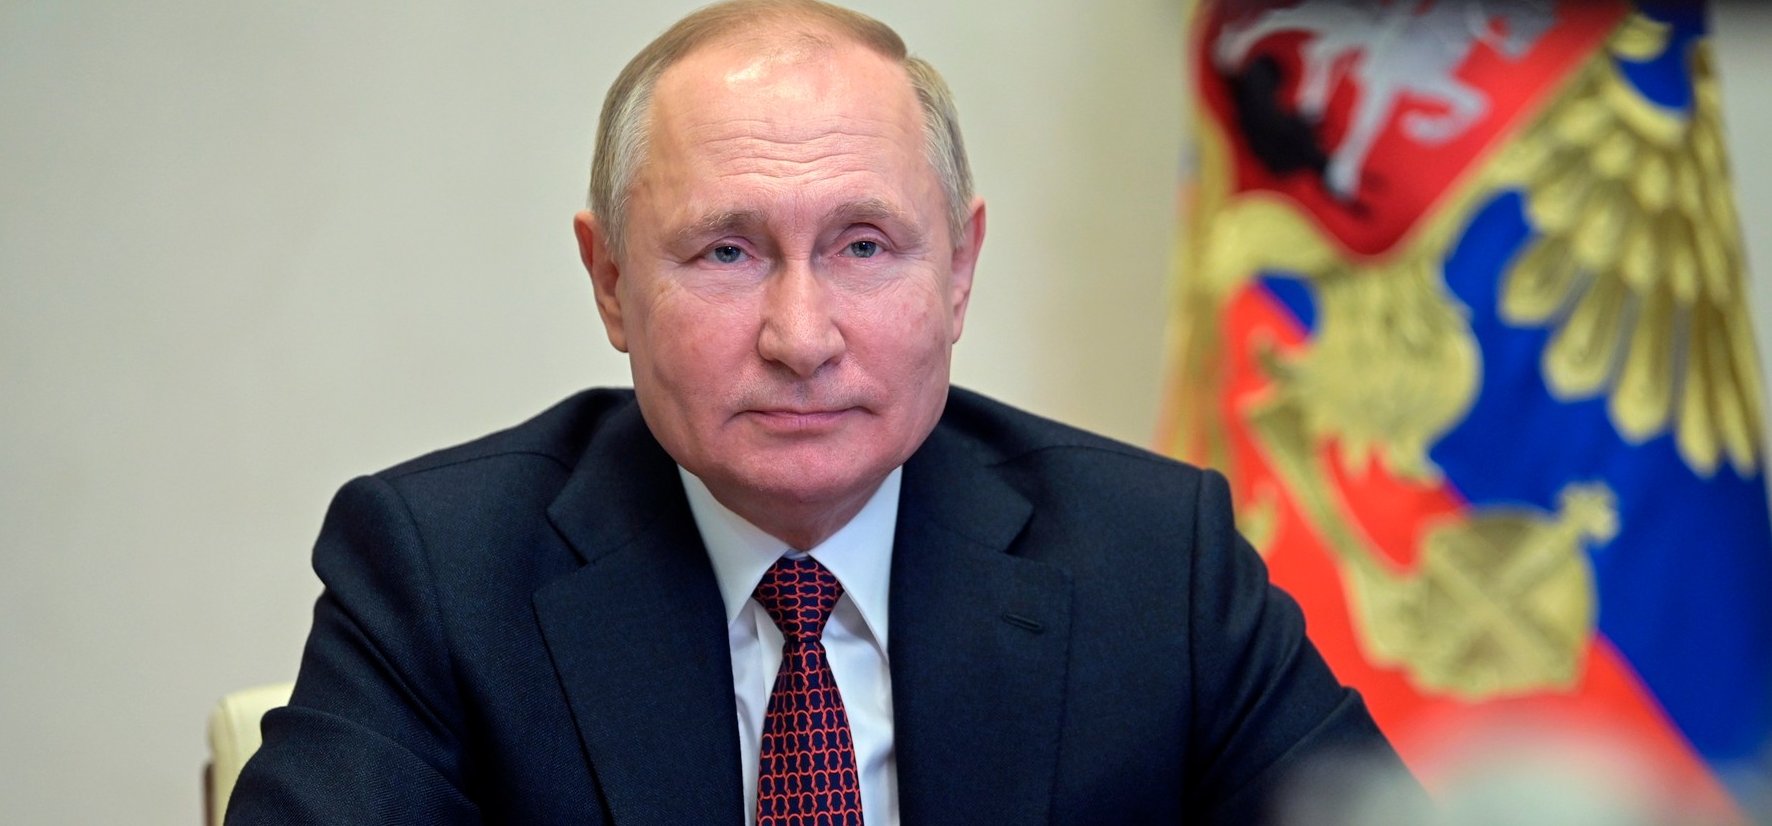 Váratlant húzott Putyin – így lép fel az ellenséges országok, köztük Magyarország ellen is